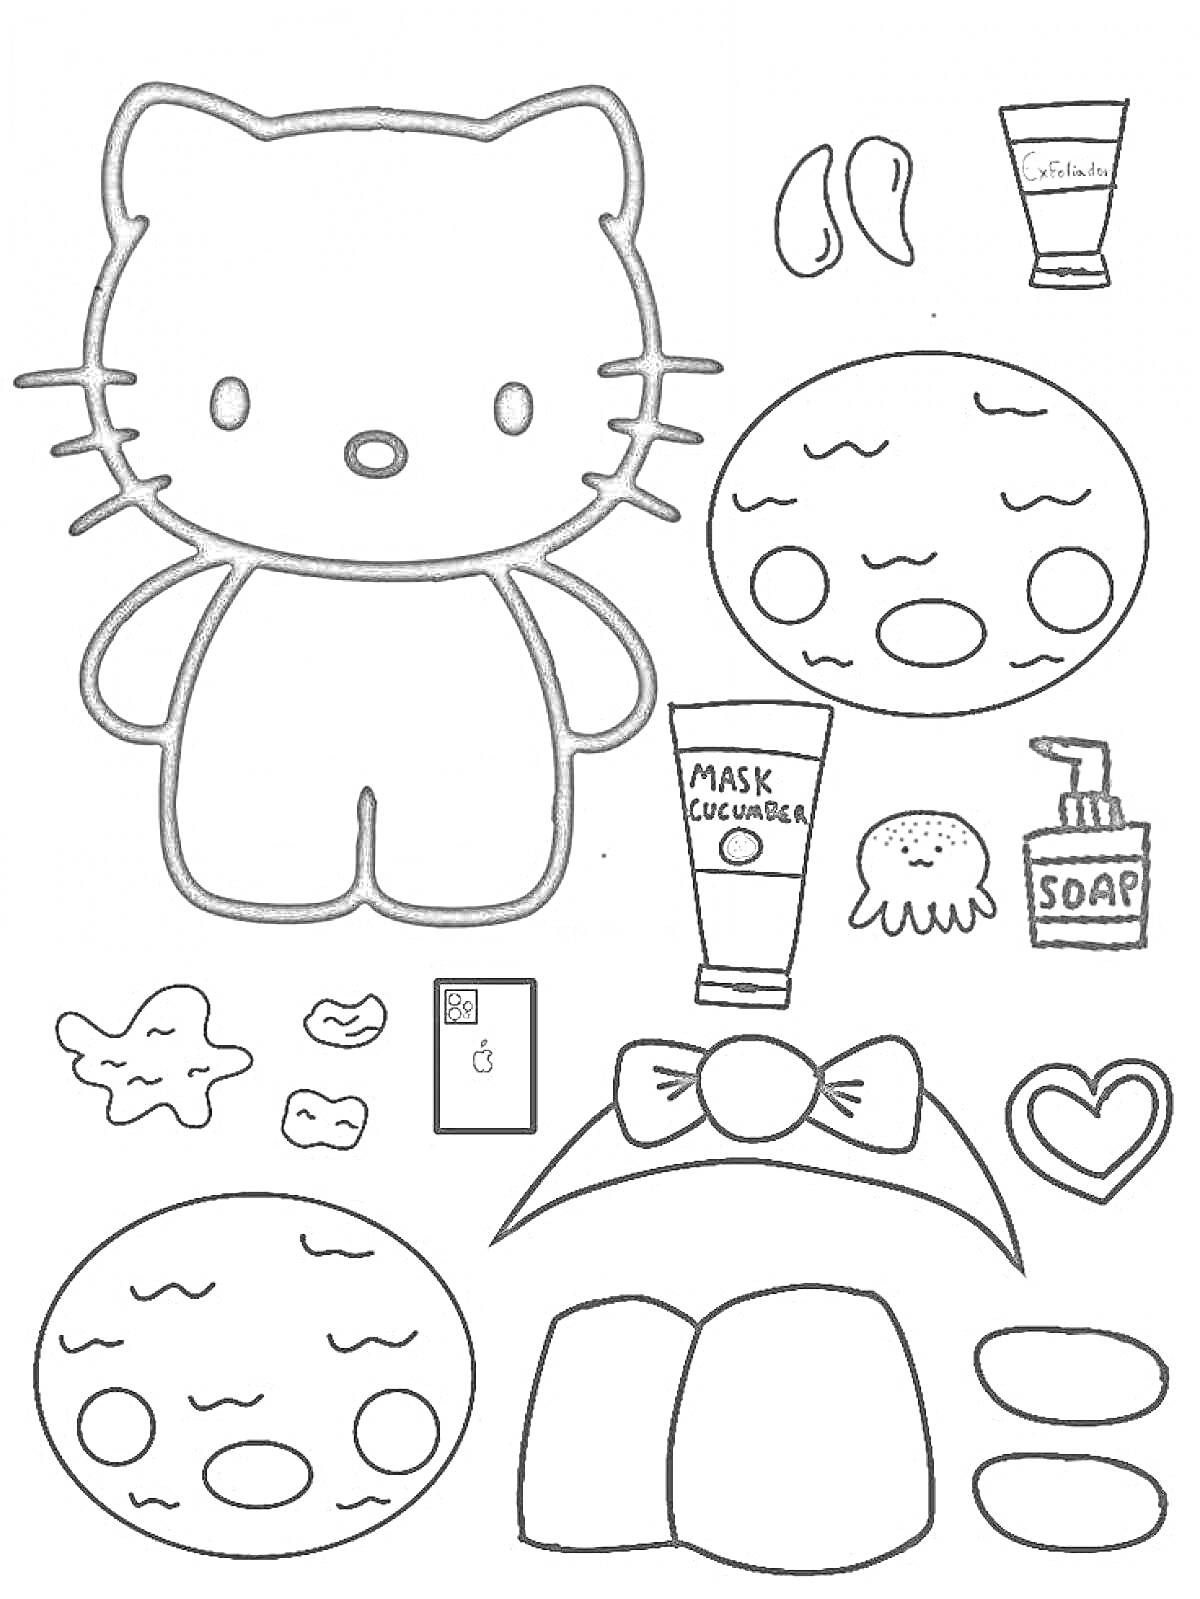 Hello Kitty с косметическими принадлежностями и маской для лица, бантик, маска с огурцами, мыло, губка, сердечко, патчи, расческа, две маски для лица.